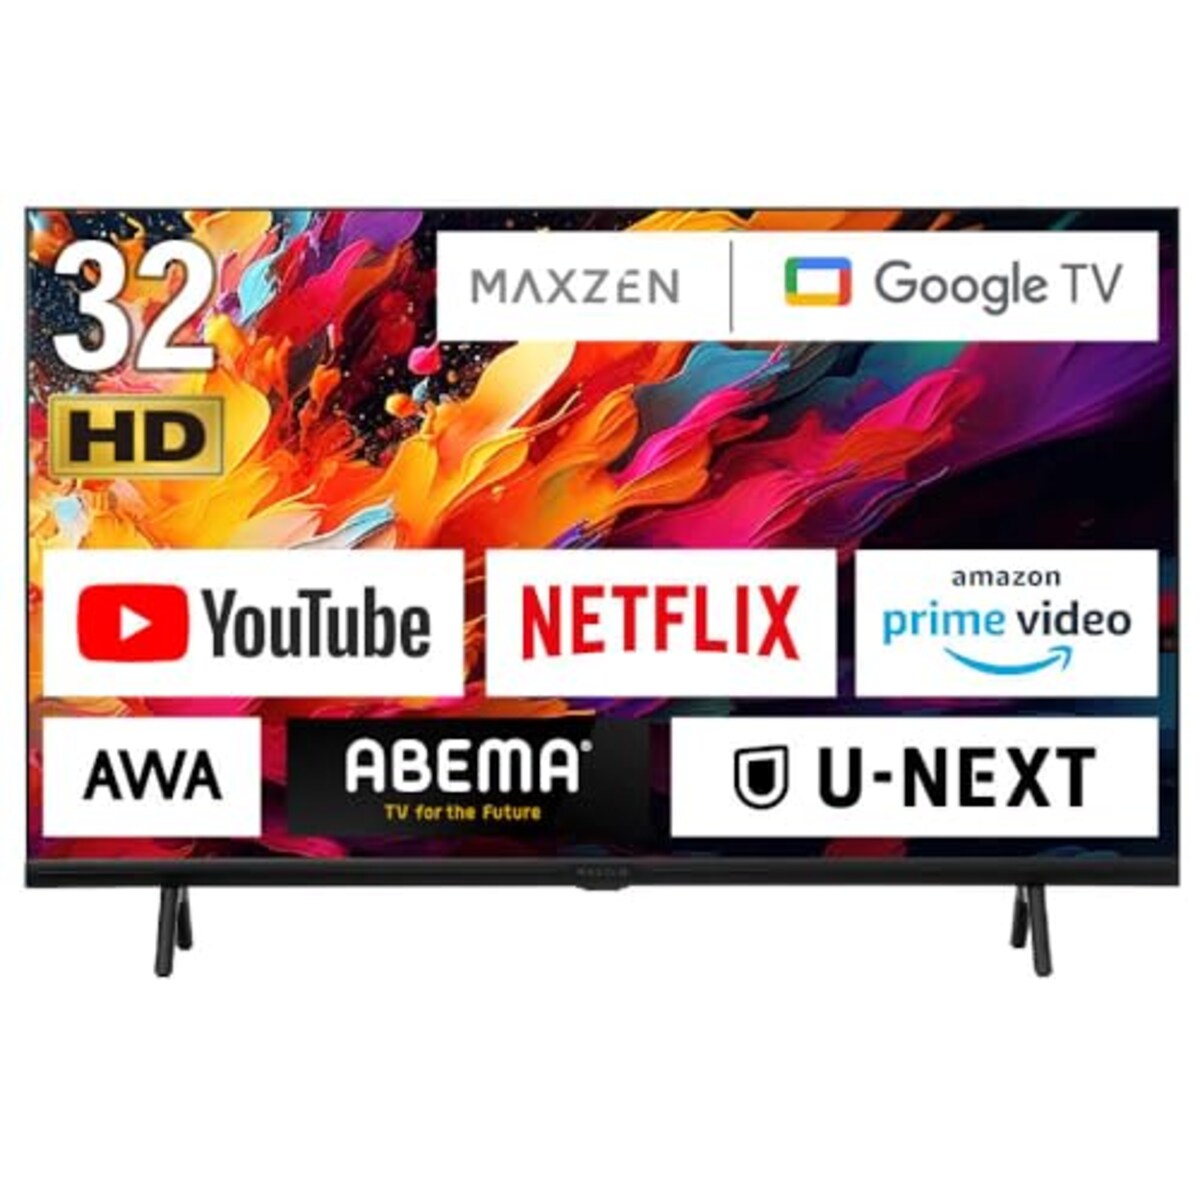 32型 Googleテレビ 32インチ グーグルテレビ 32V 地上・BS・110度CSデジタル 外付けHDD録画機能 HDMI2系統 HDRパネル Youtube Netflix AmazonPrimeVideo Abema U-NEXT 視聴可能 MAXZEN JV32DS06